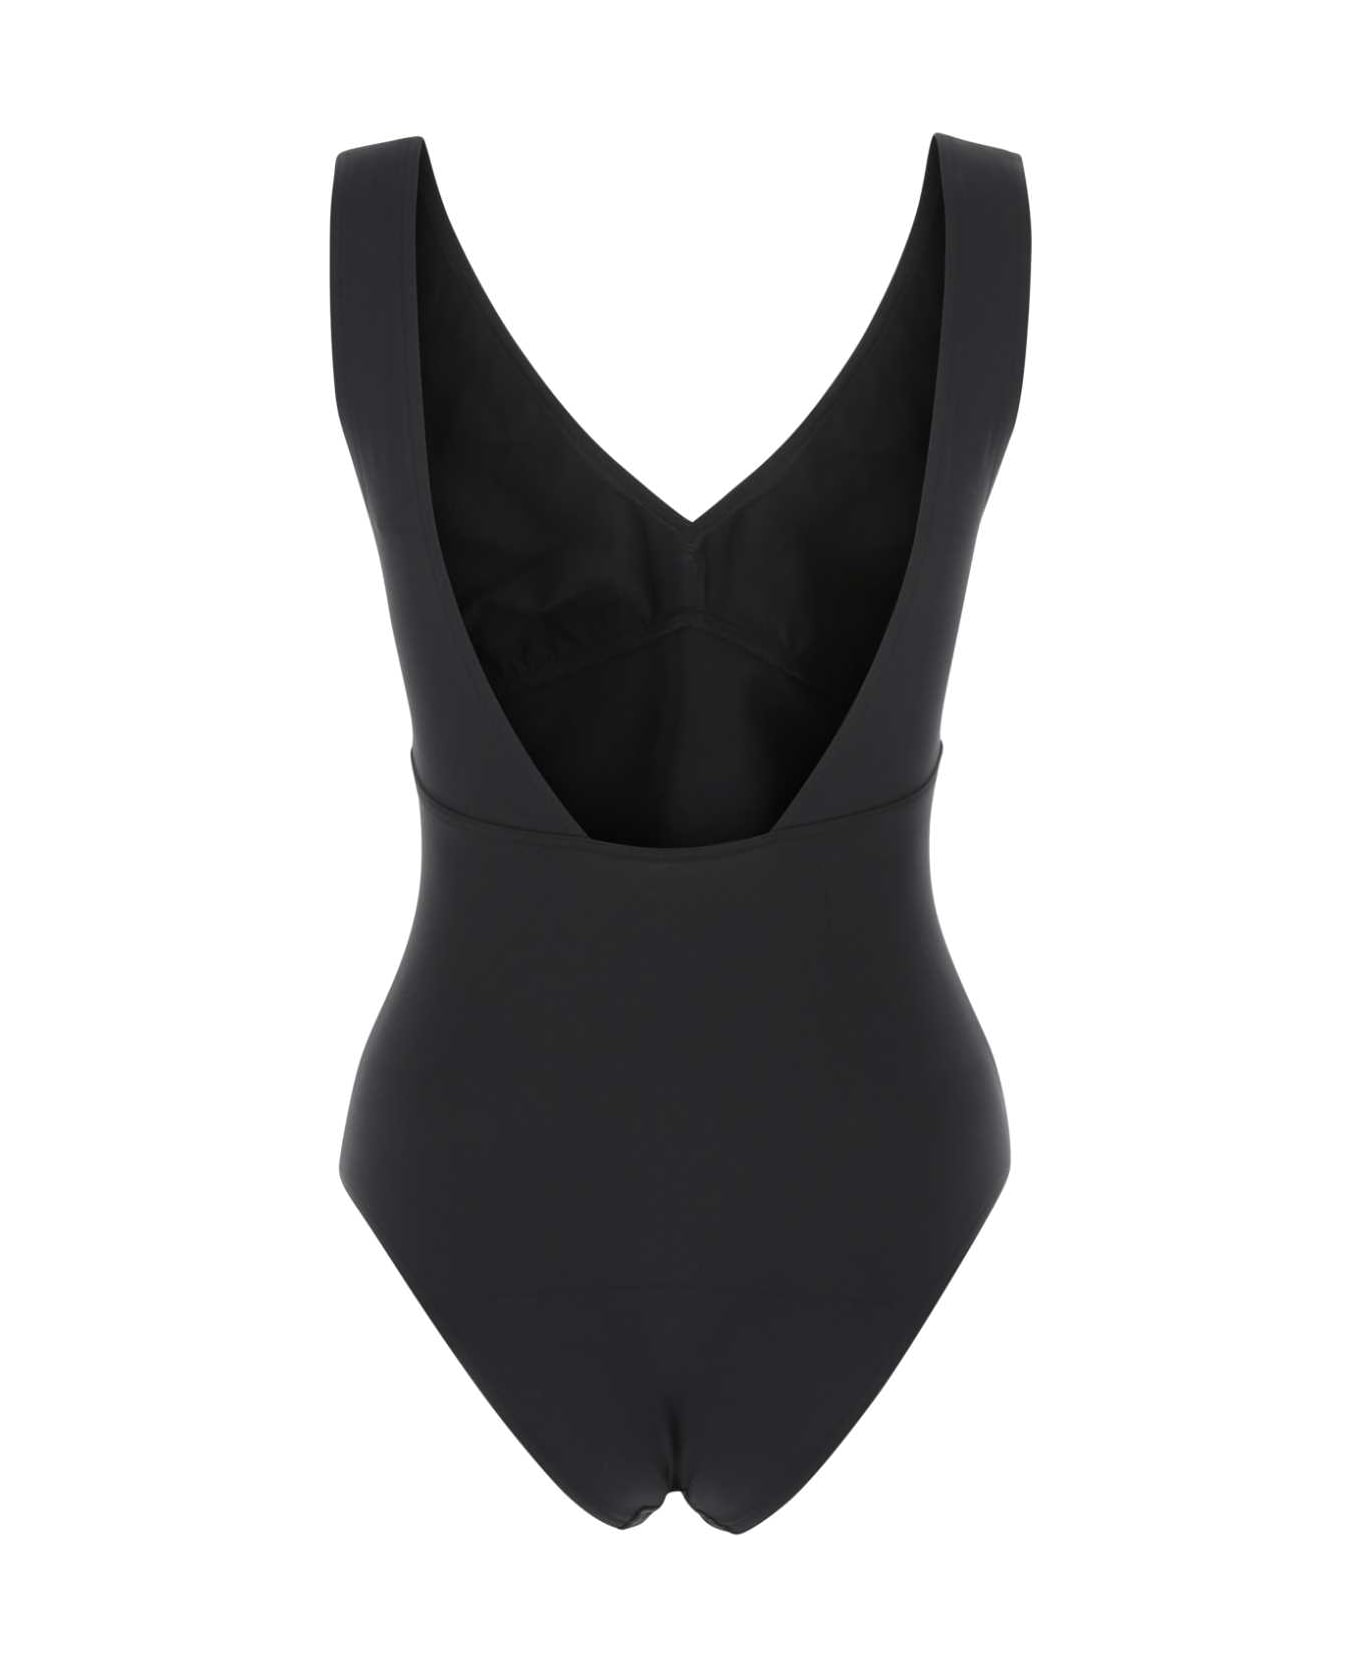 Eres Black Stretch Nylon Swimsuit - 018128 水着